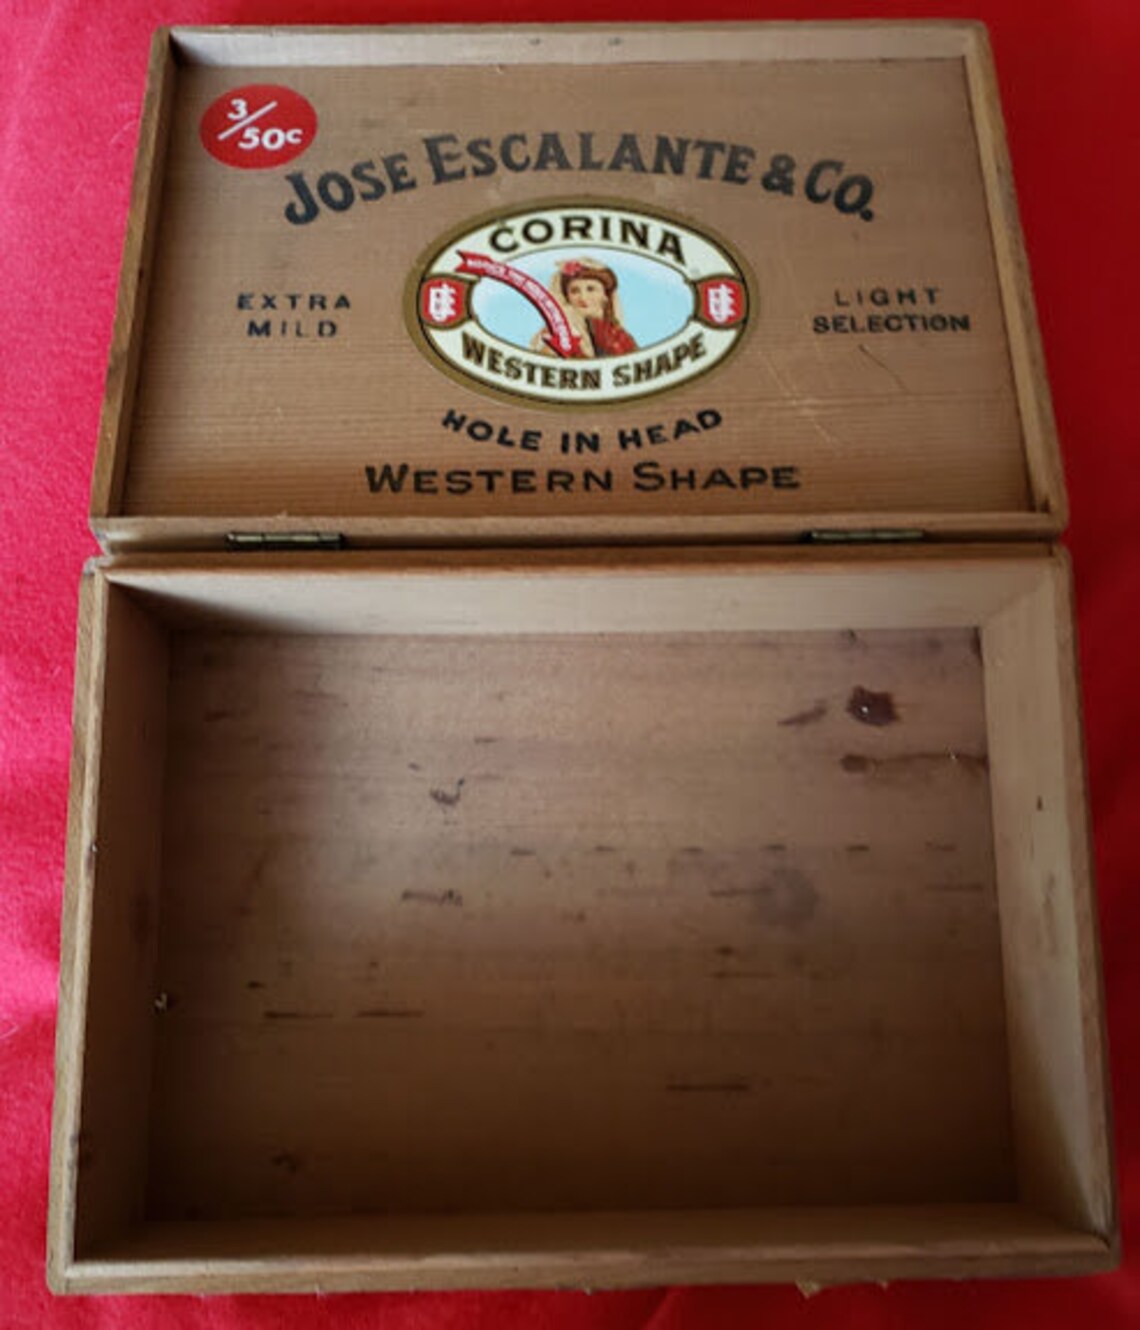 Jose Escalante and Co. Corina Western Shape Wooden Cigar Box | Etsy